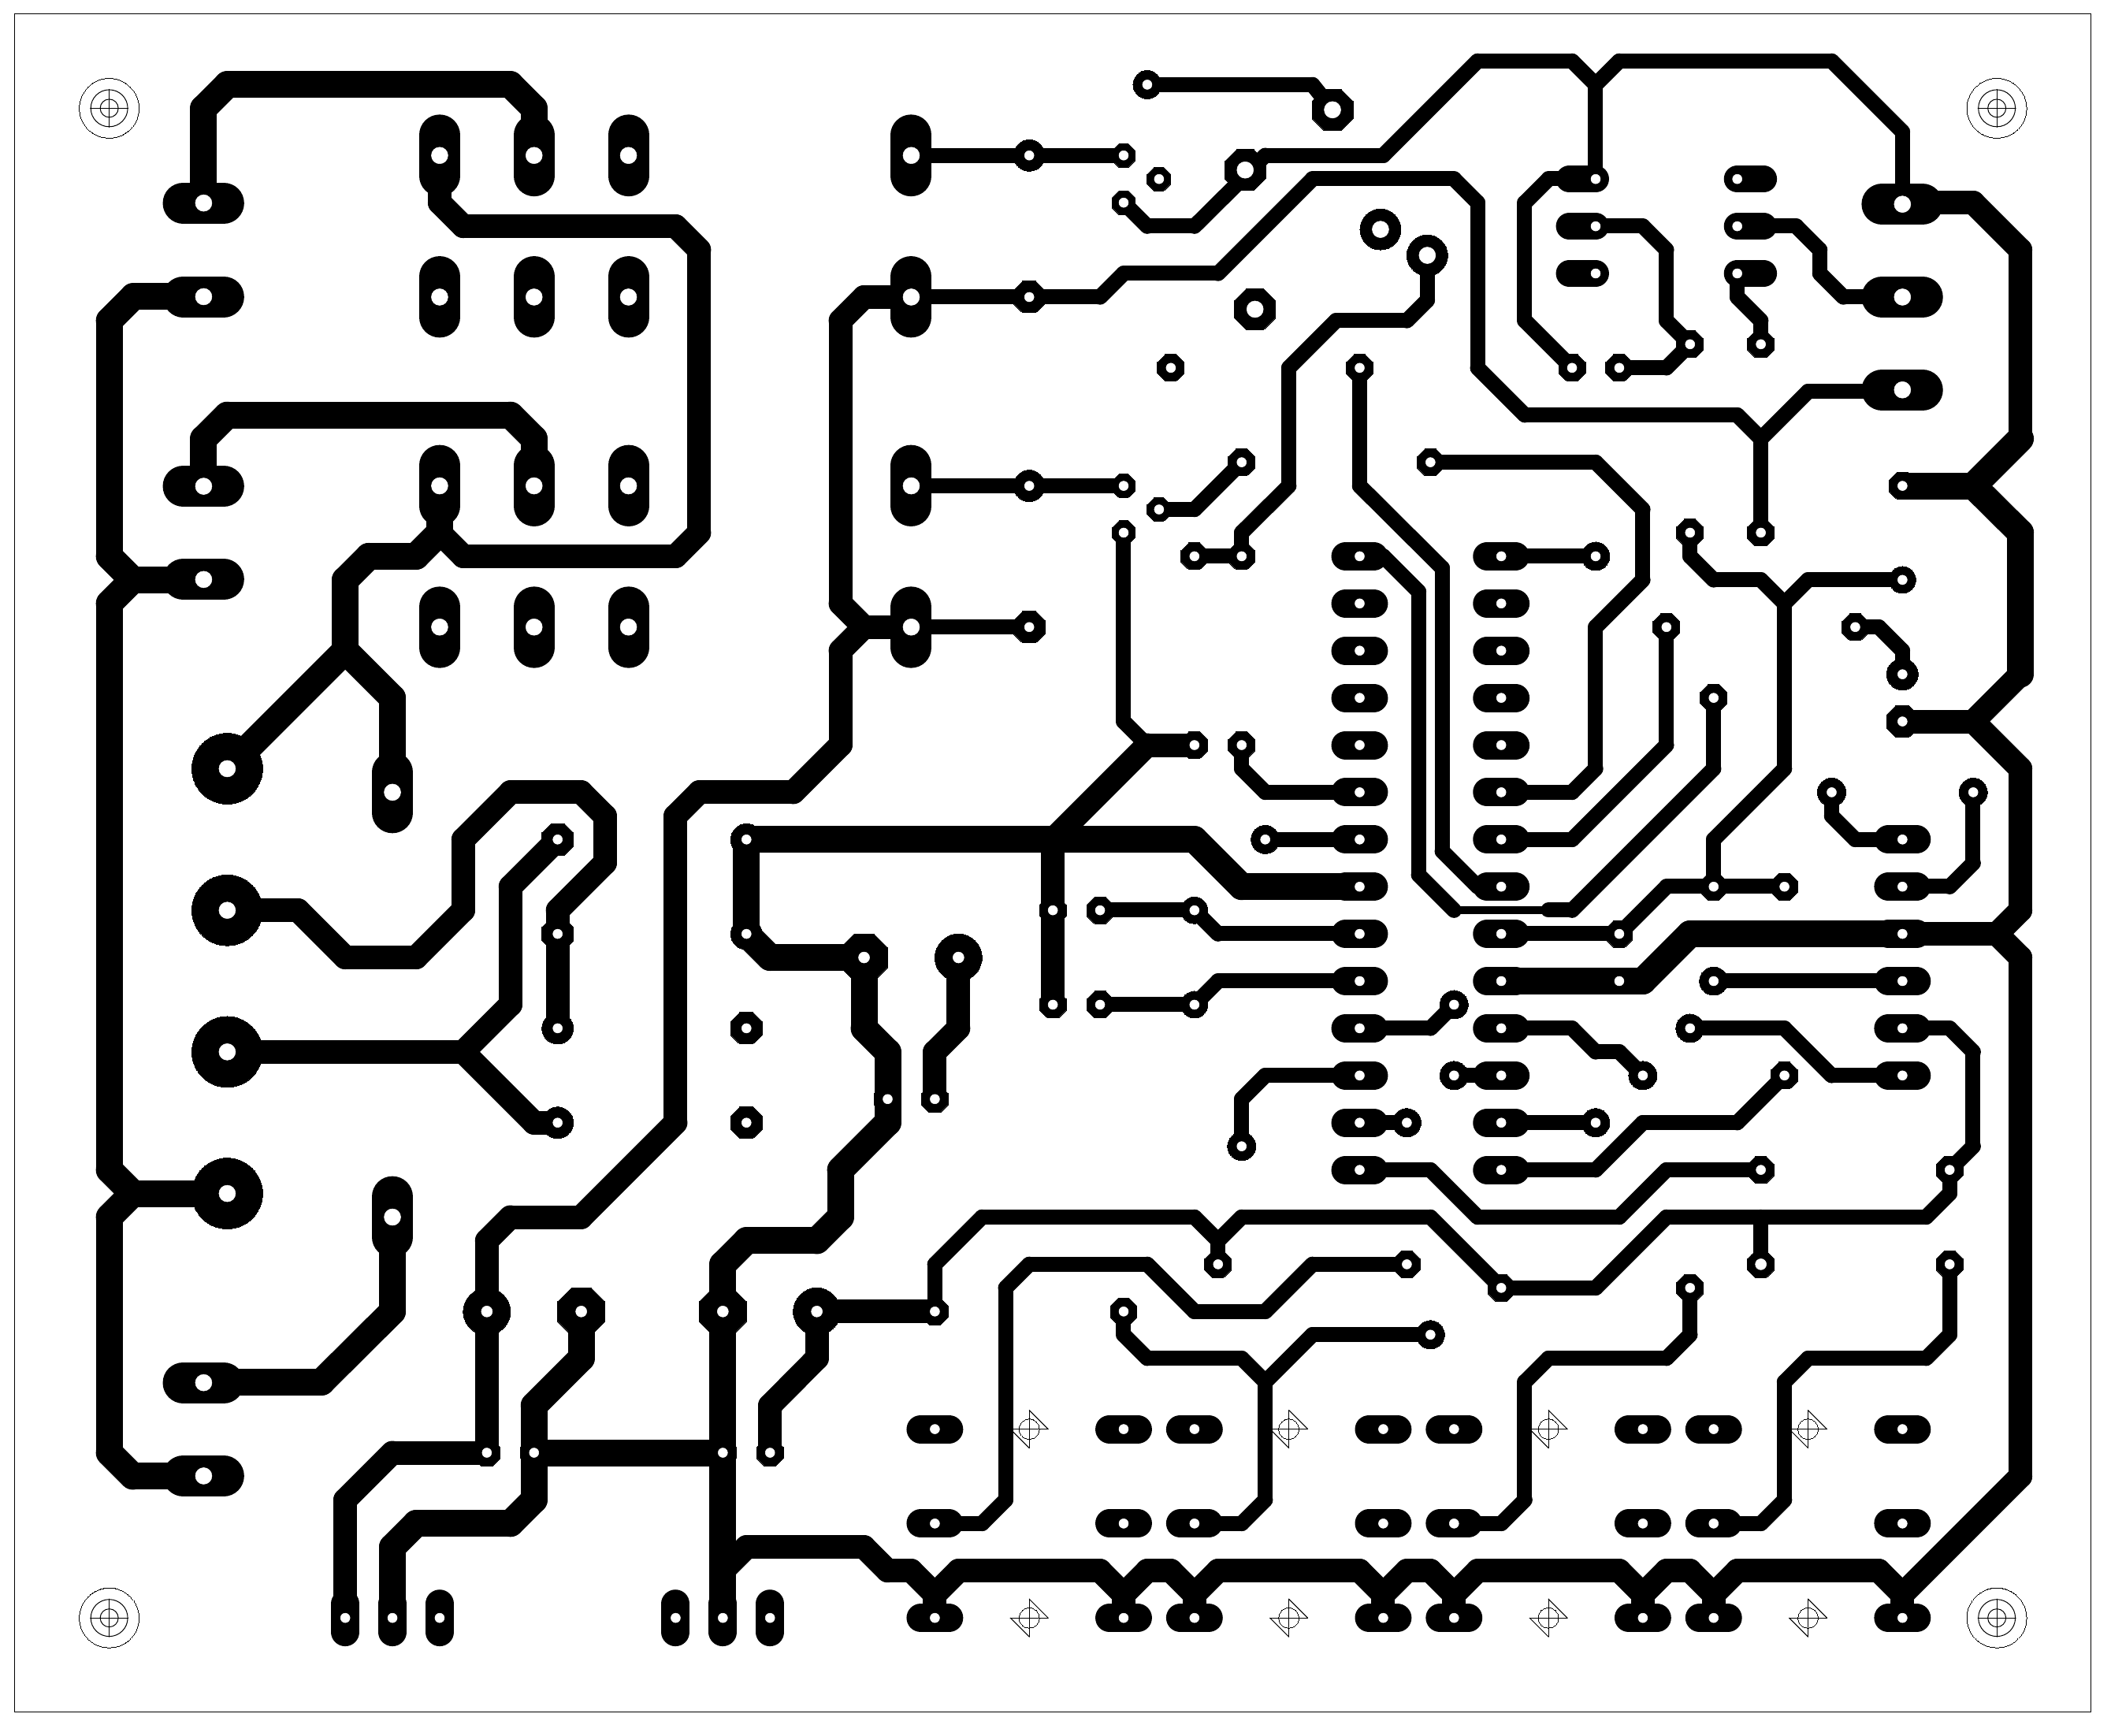 Figura 7: Desenho do circuito impresso - face dos componentes